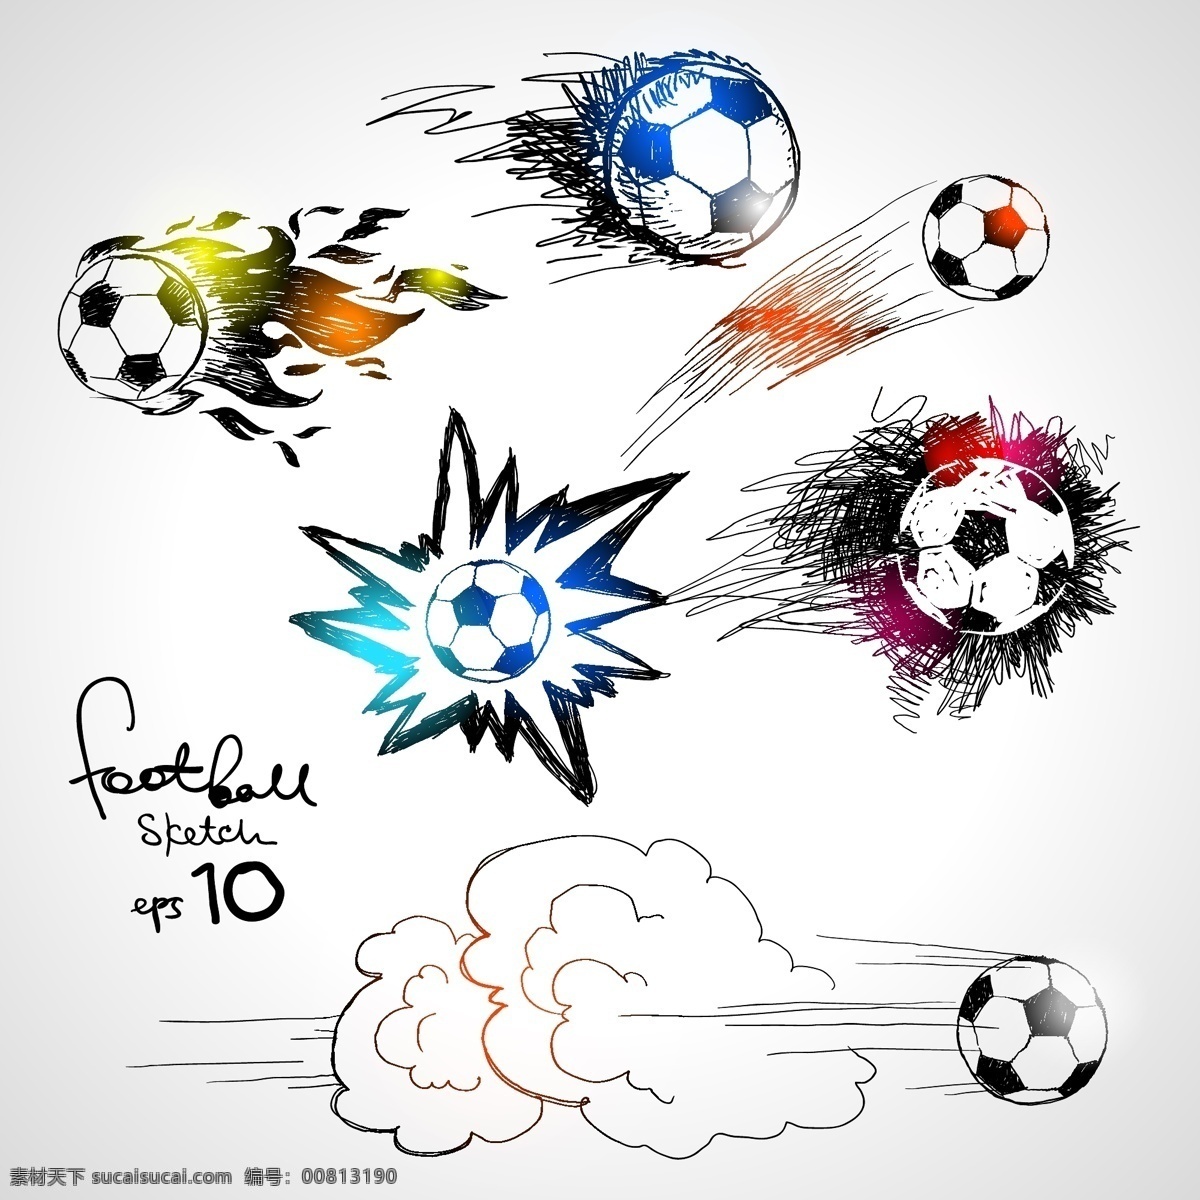 卡通 涂鸦 足球 标志 世界杯 巴西 体育运动 生活百科 矢量素材 白色